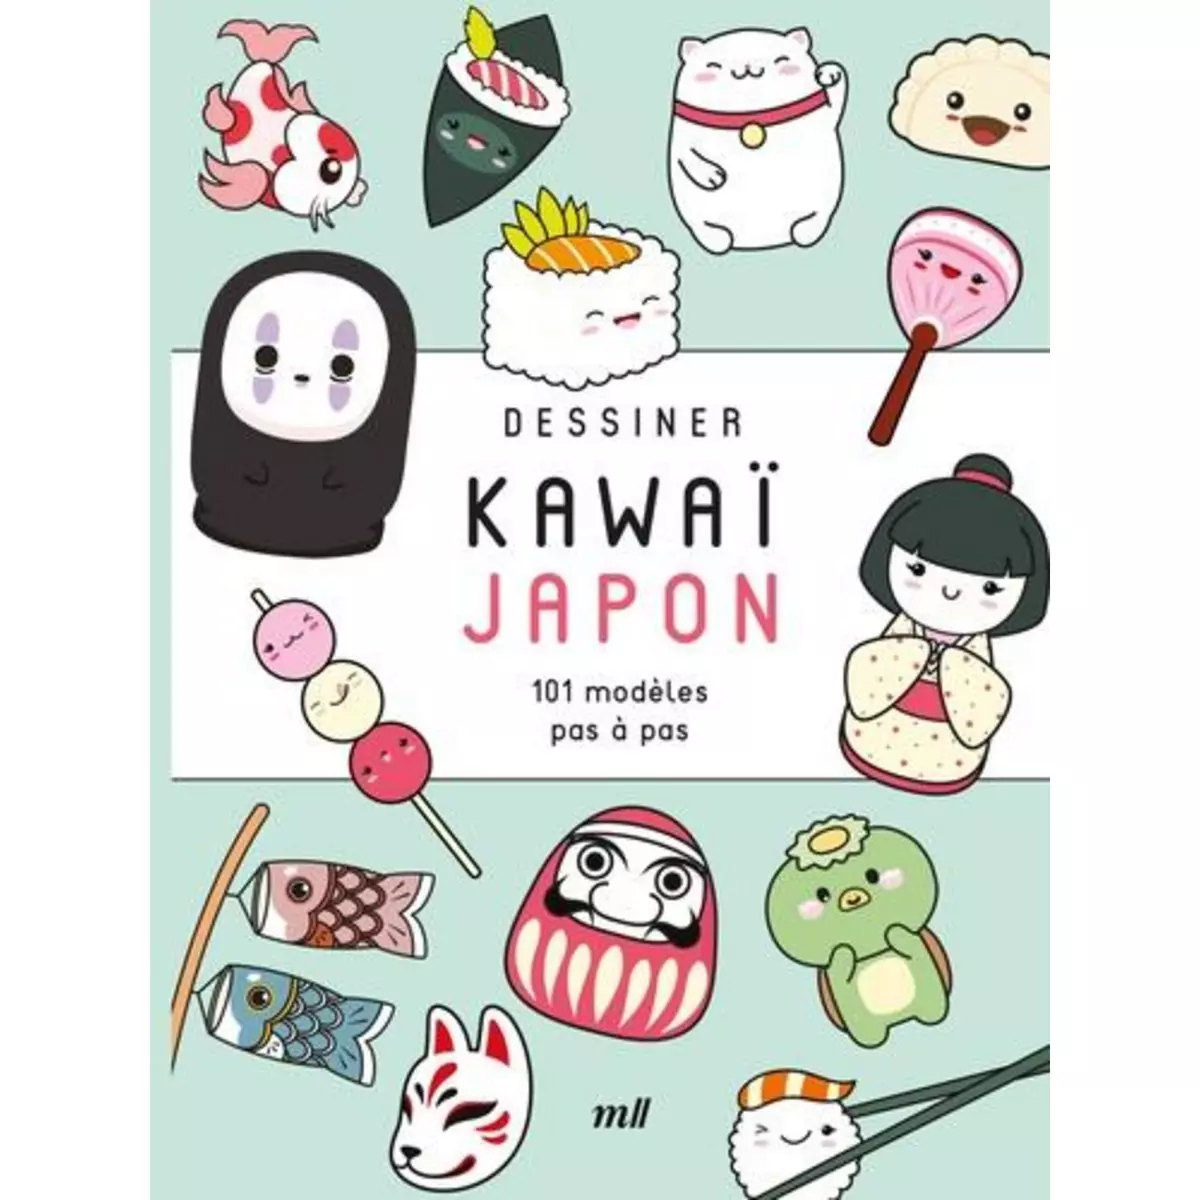  DESSINER KAWAI JAPON. 101 MODELES PAS-A-PAS, Merci les livres